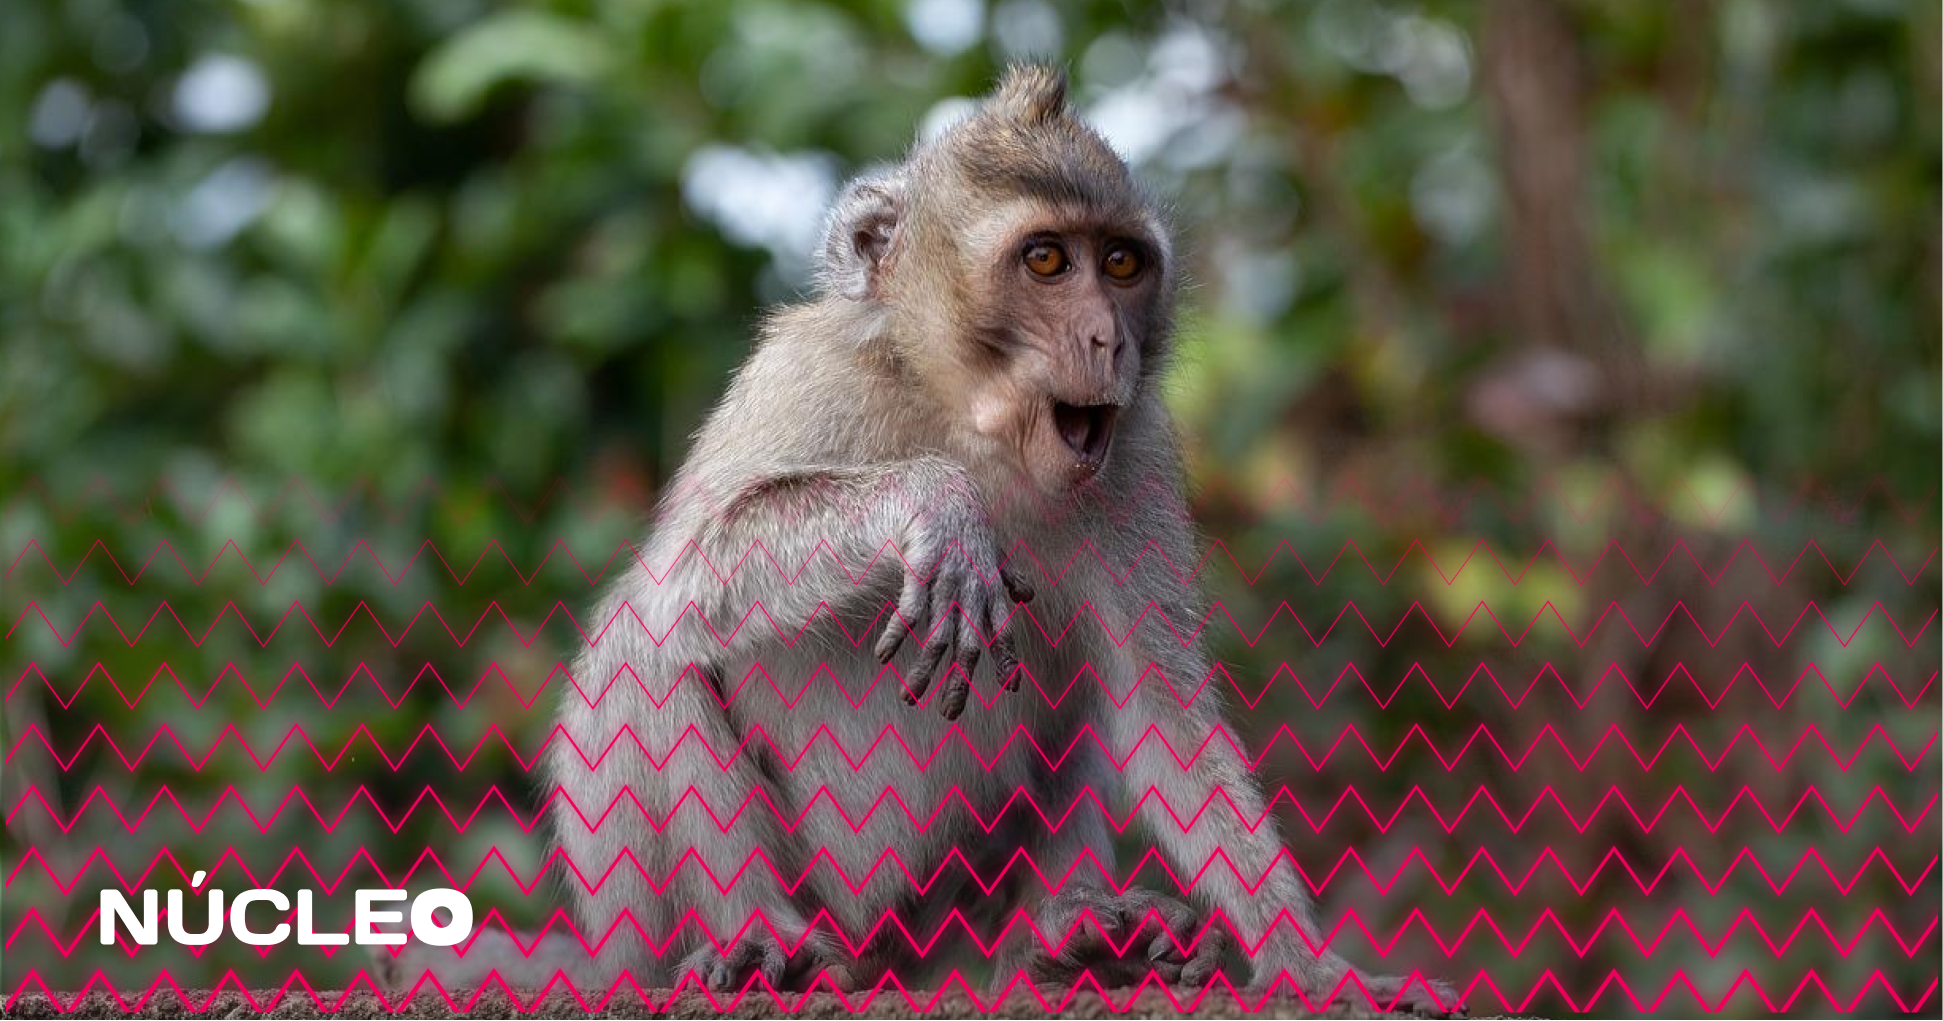 Varíola dos macacos: a culpa não é deles!